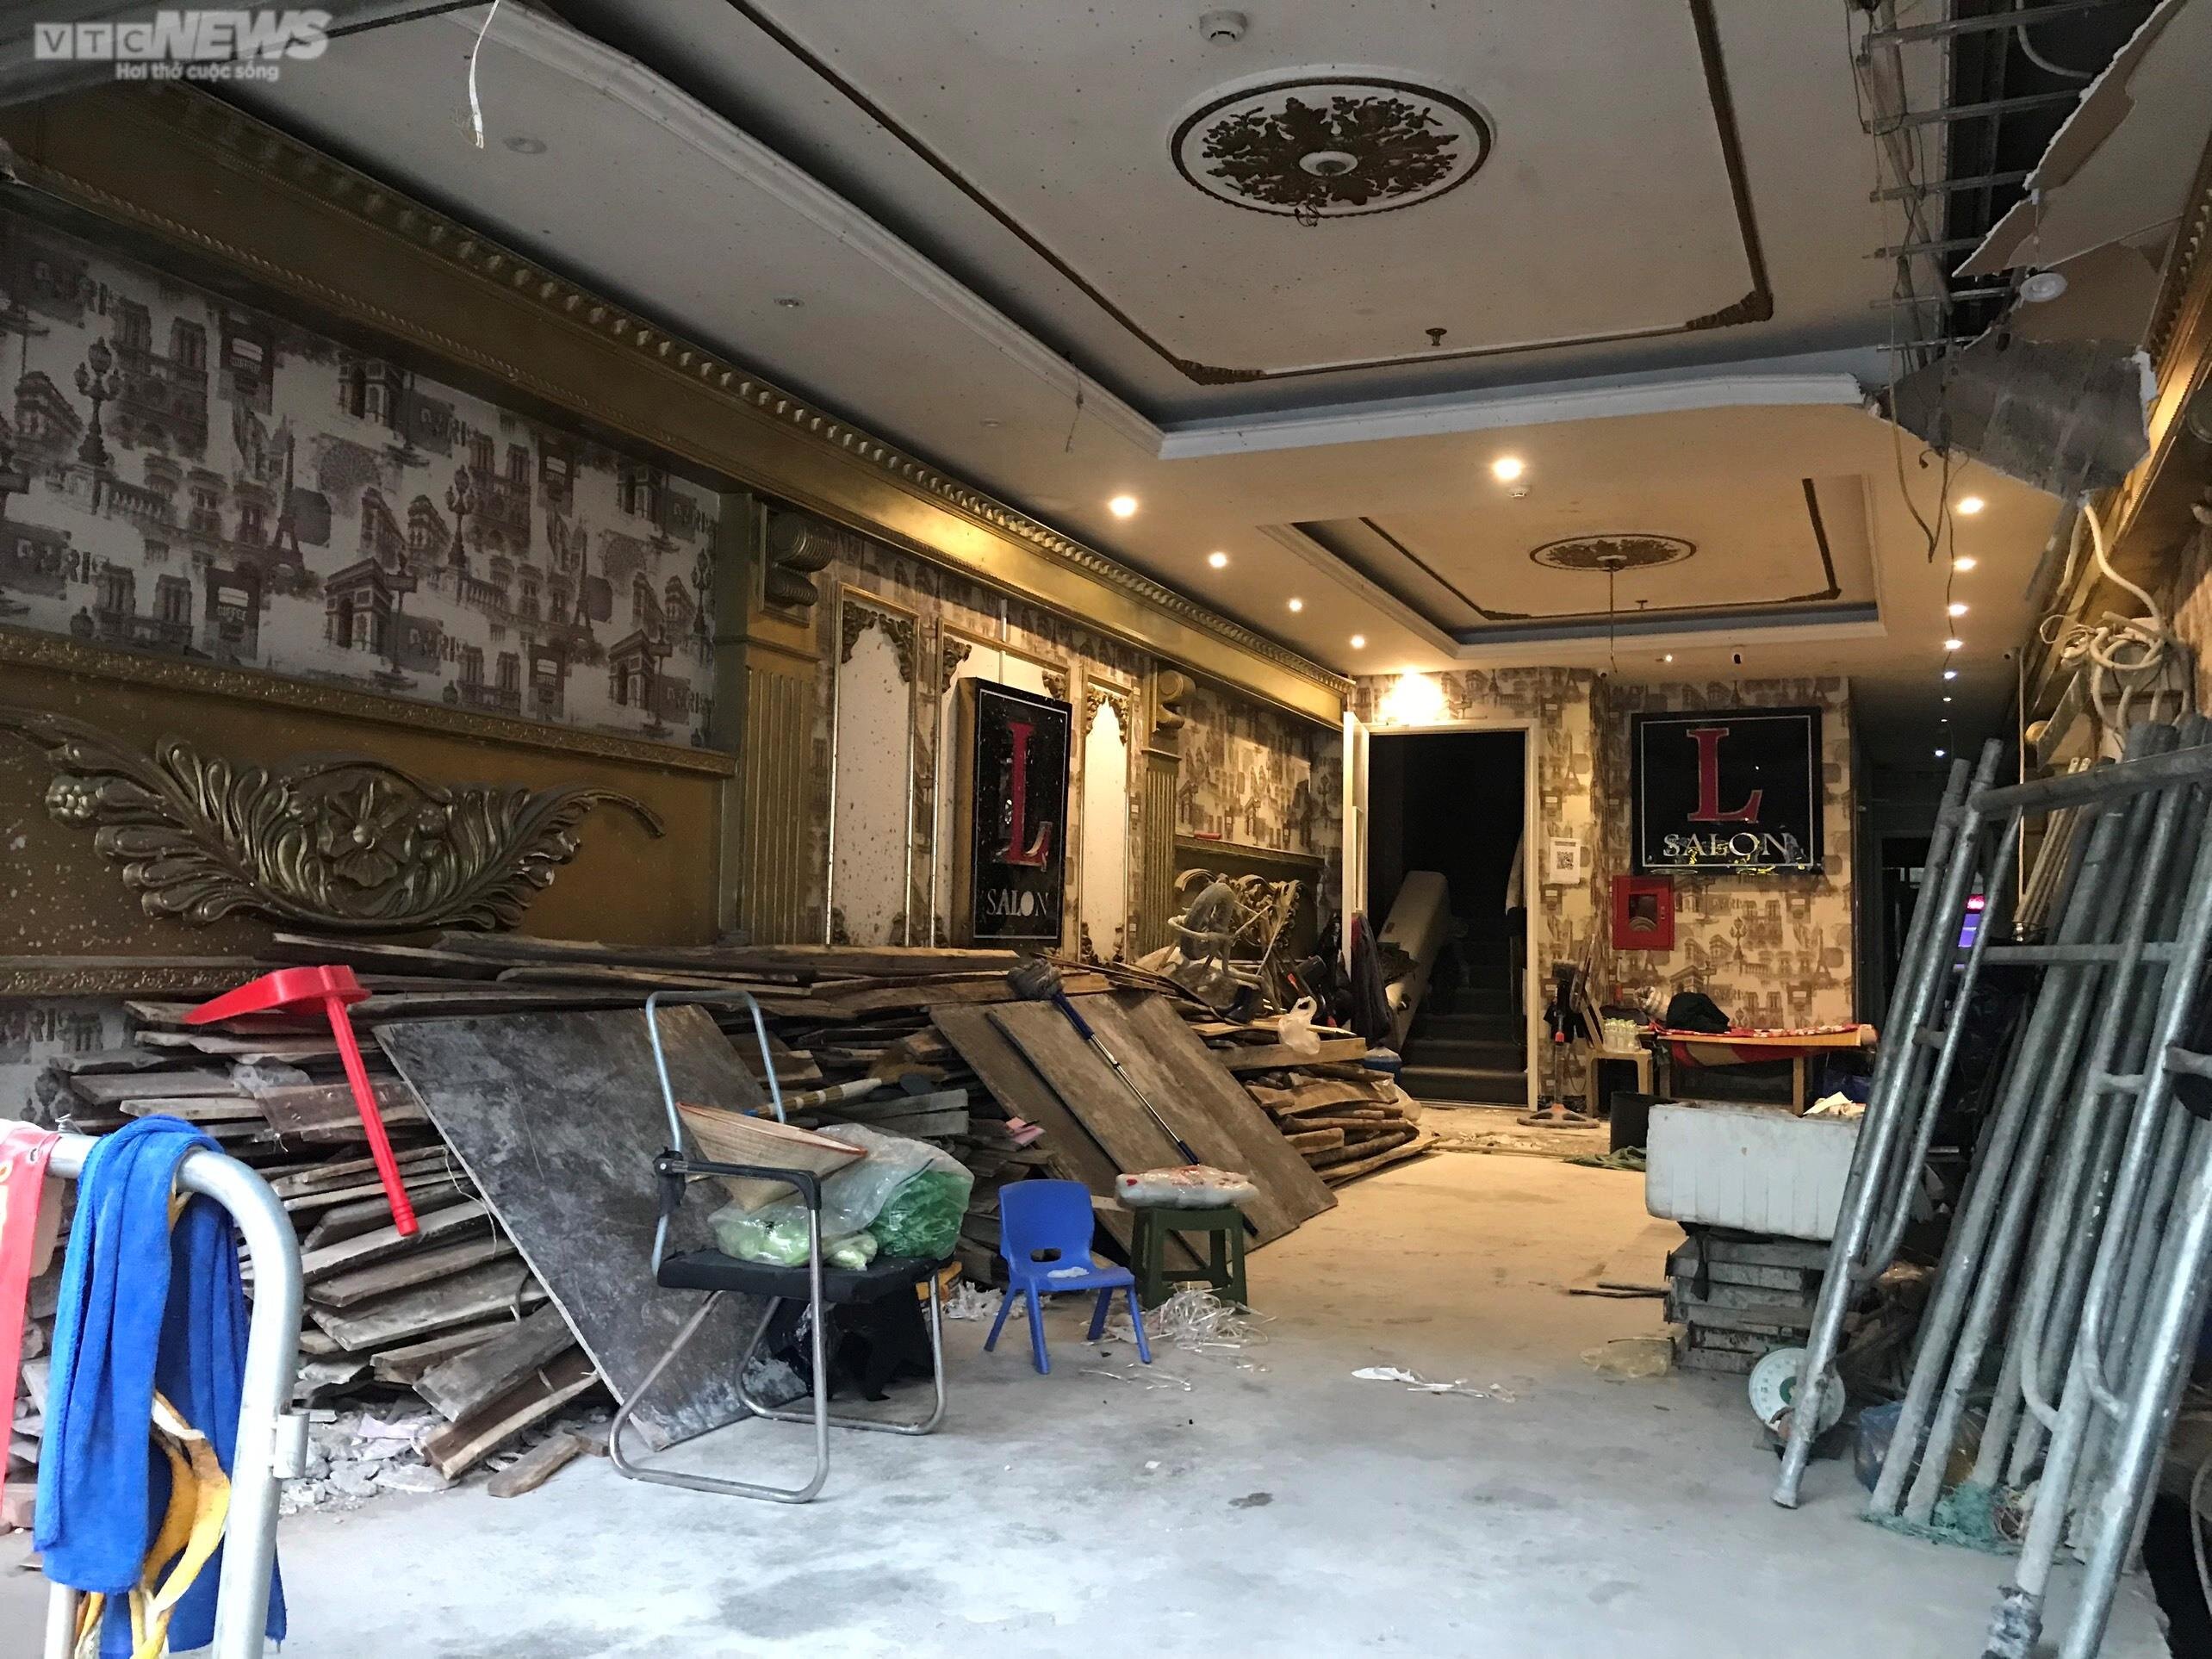 Quán karaoke ở Hà Nội gấp rút sửa chữa, mong chờ được 'hồi sinh' - 9